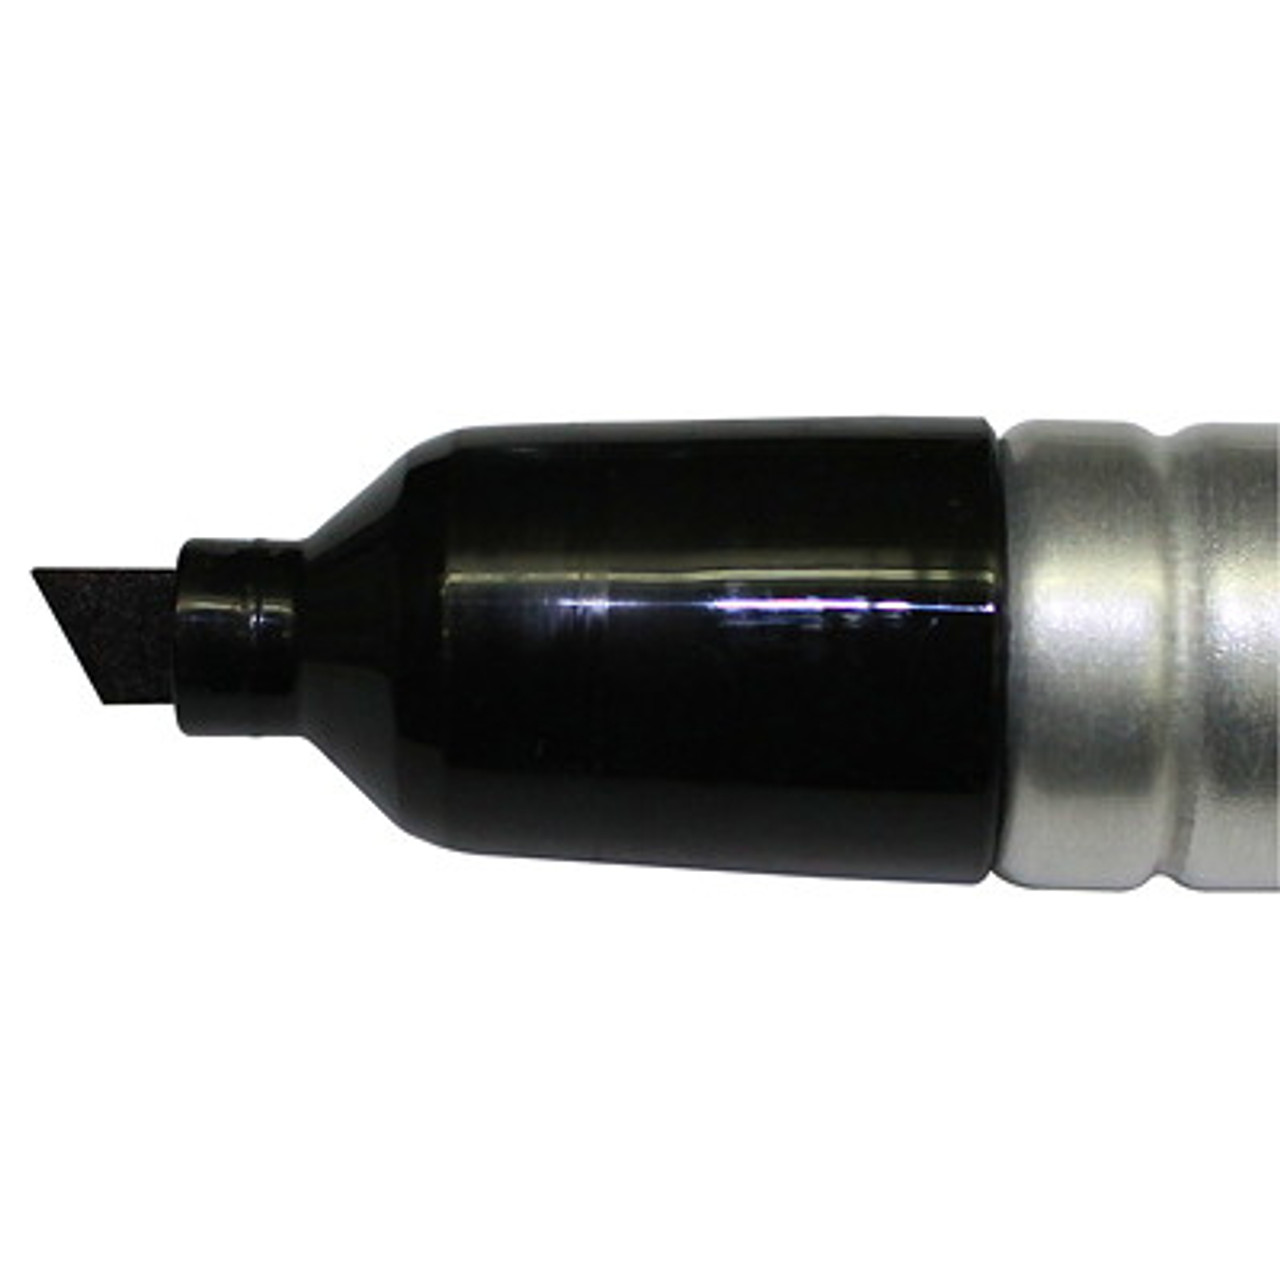 Sharpie 44001 Magnum Oversized Permanent Marker, Chisel Tip, Black - 44001